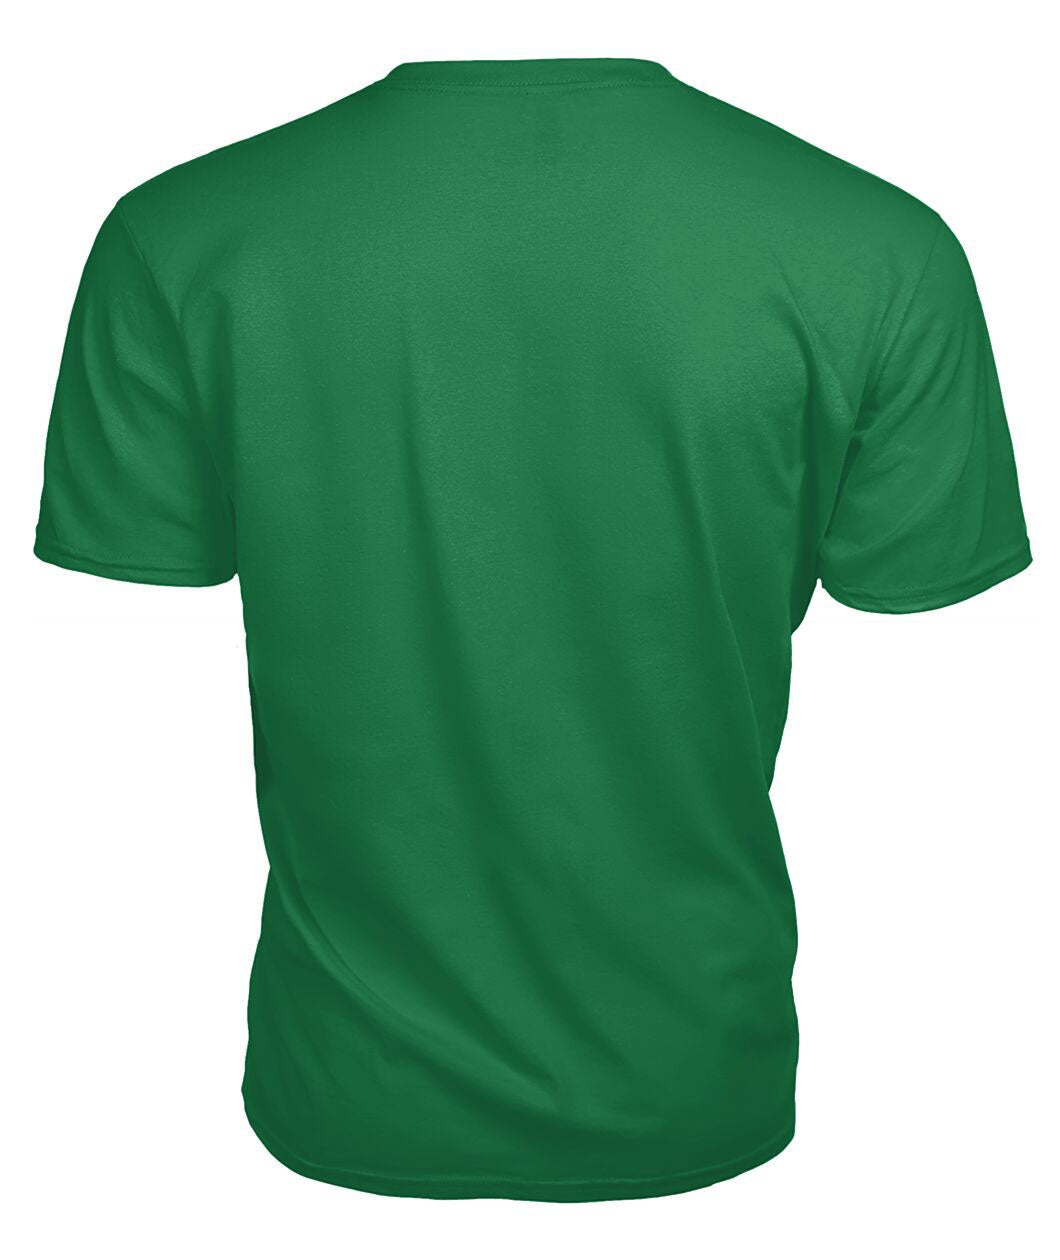 Maitland Tartan Crest 2D T-shirt - Blood Runs Through My Veins Style